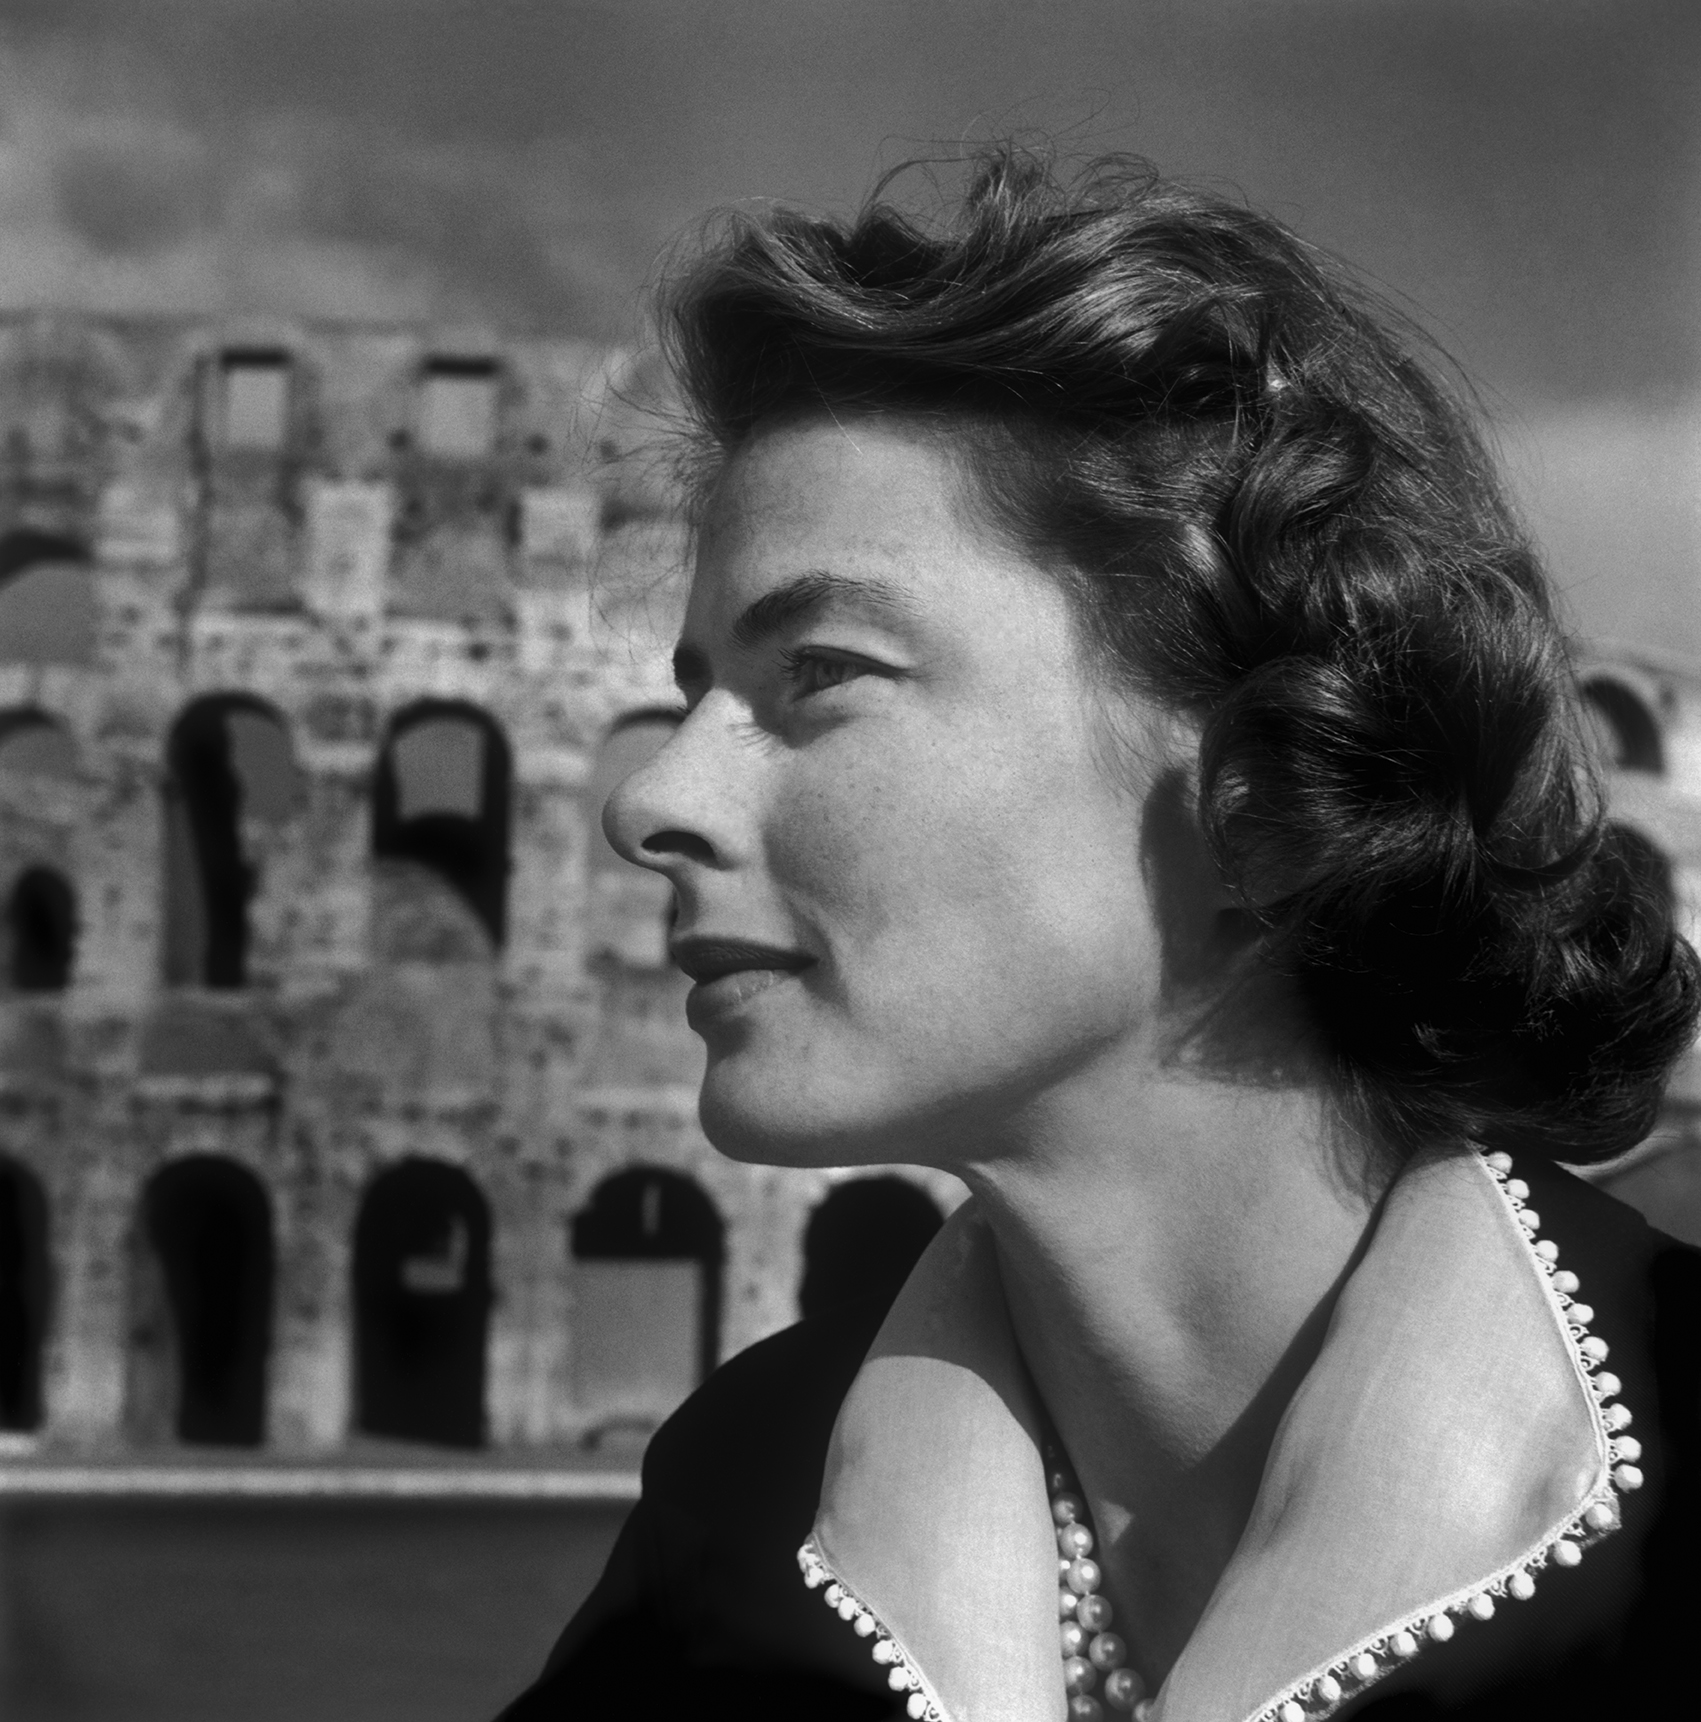 Porträtt i profil av skådespelerskan Ingrid Bergman framför byggnaden Colosseum.